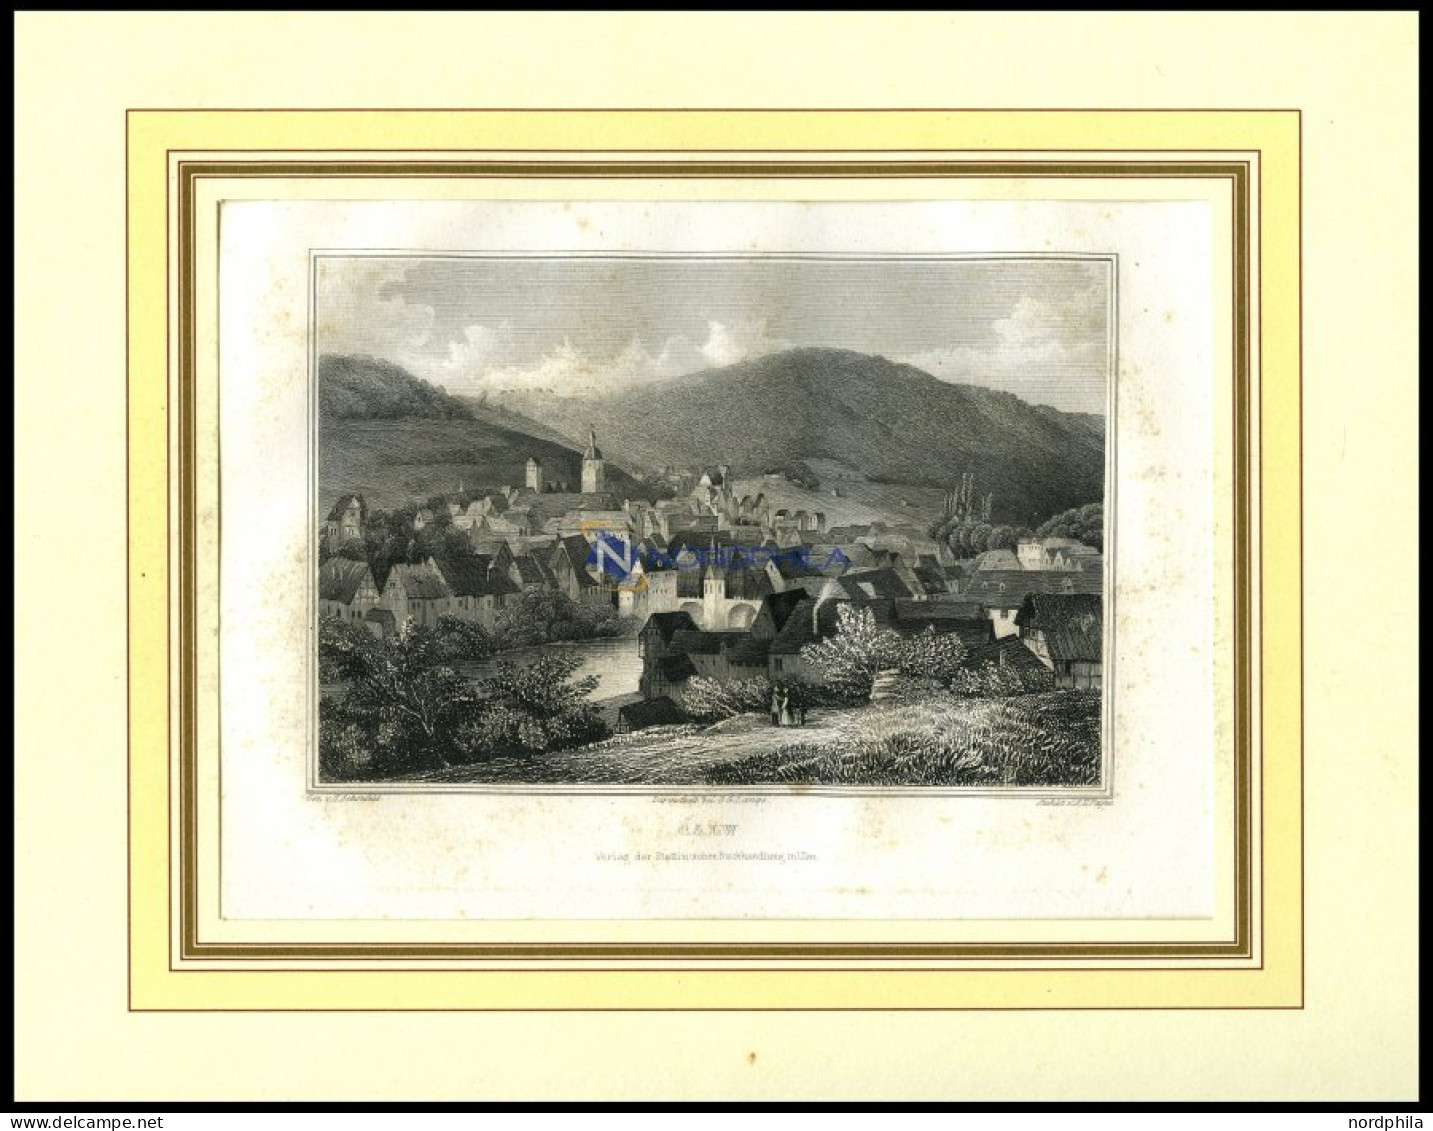 CALW, Gesamtansicht, Stahlstich Von Schanfeld/Payne, 1840 - Estampas & Grabados